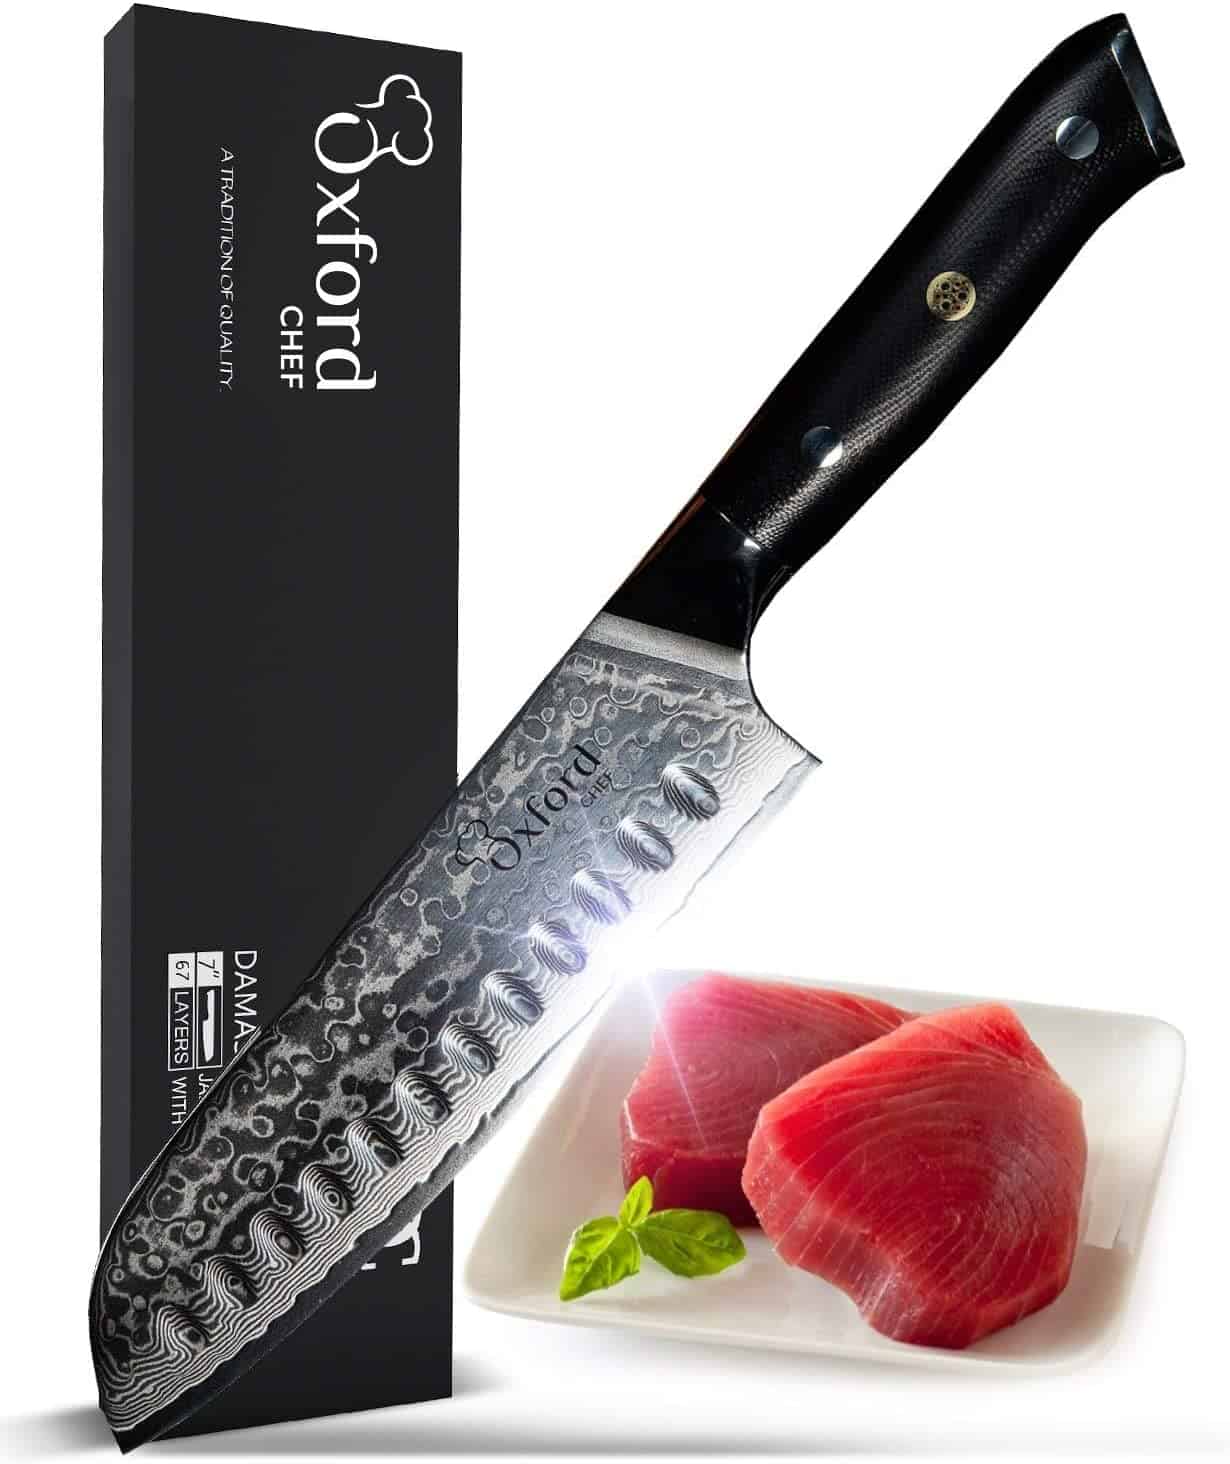 Bästa sushikniven för att skära rullar - Oxford Chef Santoku Knife